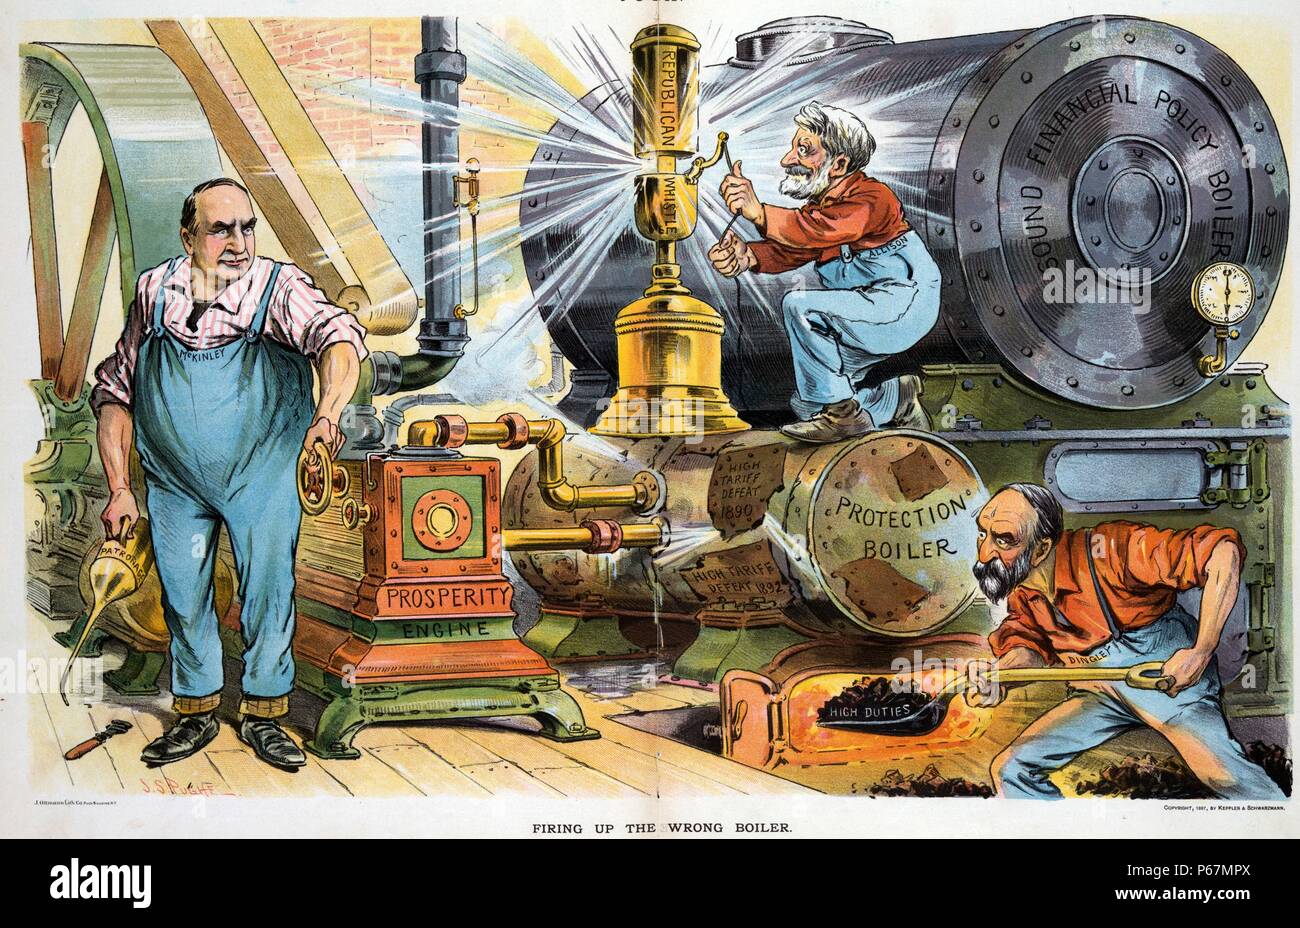 Feuern Sie die falschen Kessel' Präsident McKinley Holding ein Öl mit der Bezeichnung "Protektion" und Drehen der Kurbel auf einem 'Wohlstand' während Nelson Dingley schaufeln Kohle in ein beschädigt" Schutz Kessel' als 'Hohe Tarif Niederlage 1890' und 'Hohe Tarif Niederlage 1892", das neben einem nagelneuen und unbenutzten Kessel "solide Finanzpolitik Kessel'; William B. Allison zieht die auf einem großen Messing Republikaner Pfeifen" griff gekennzeichnet. Stockfoto